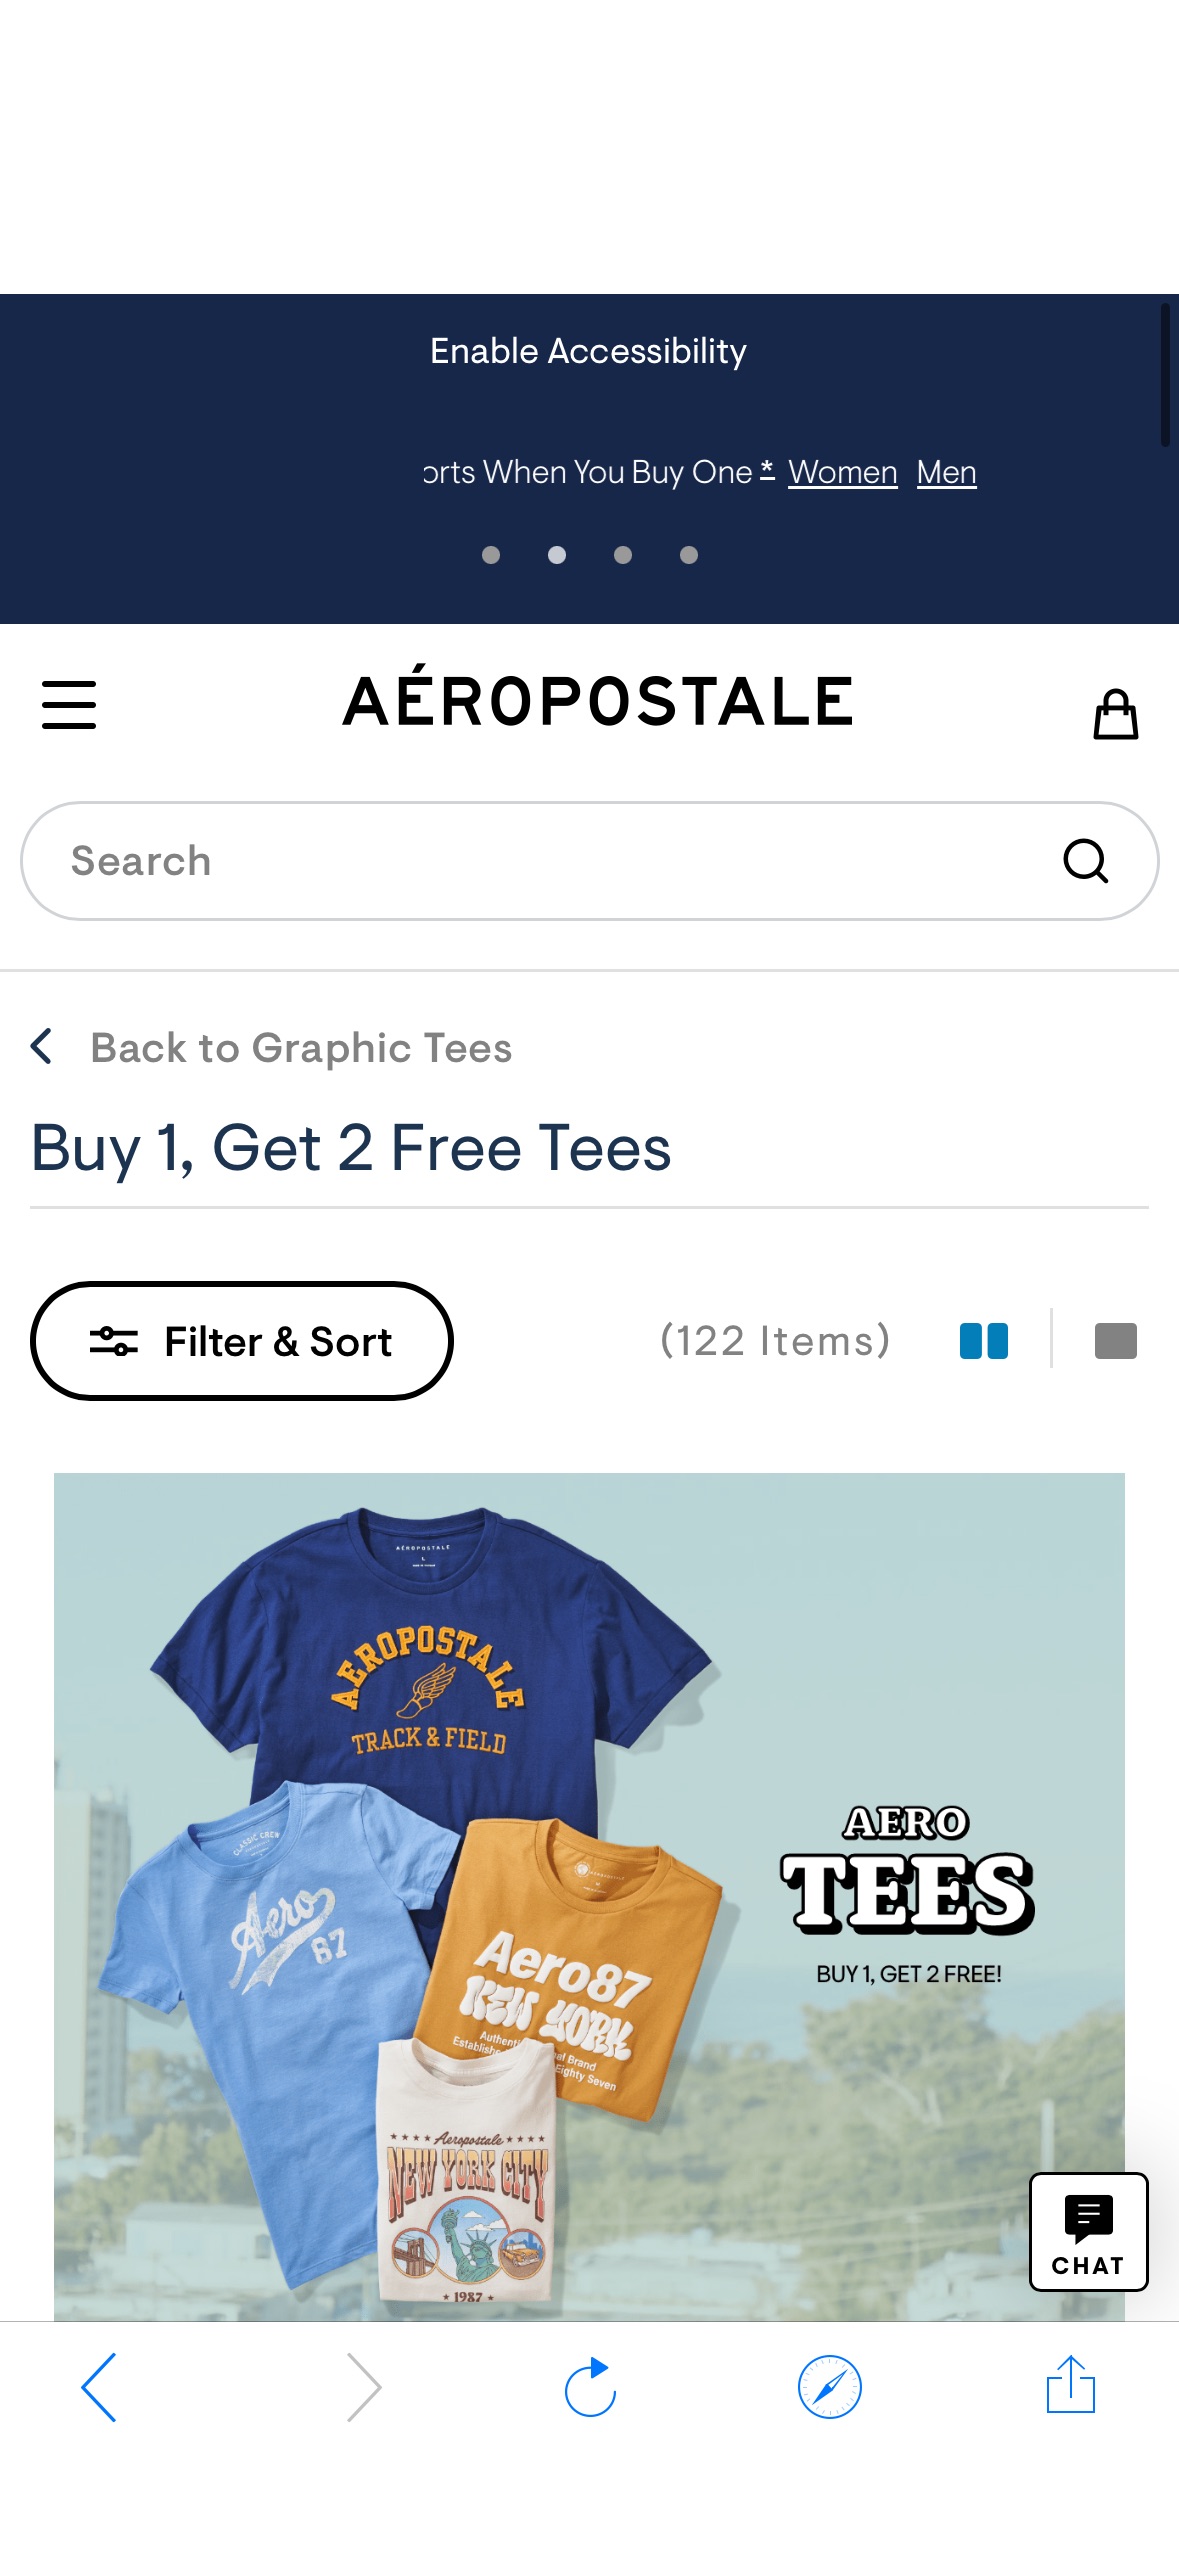 Aeropostale- Buy 1, Get 2 FREE Graphic Tees